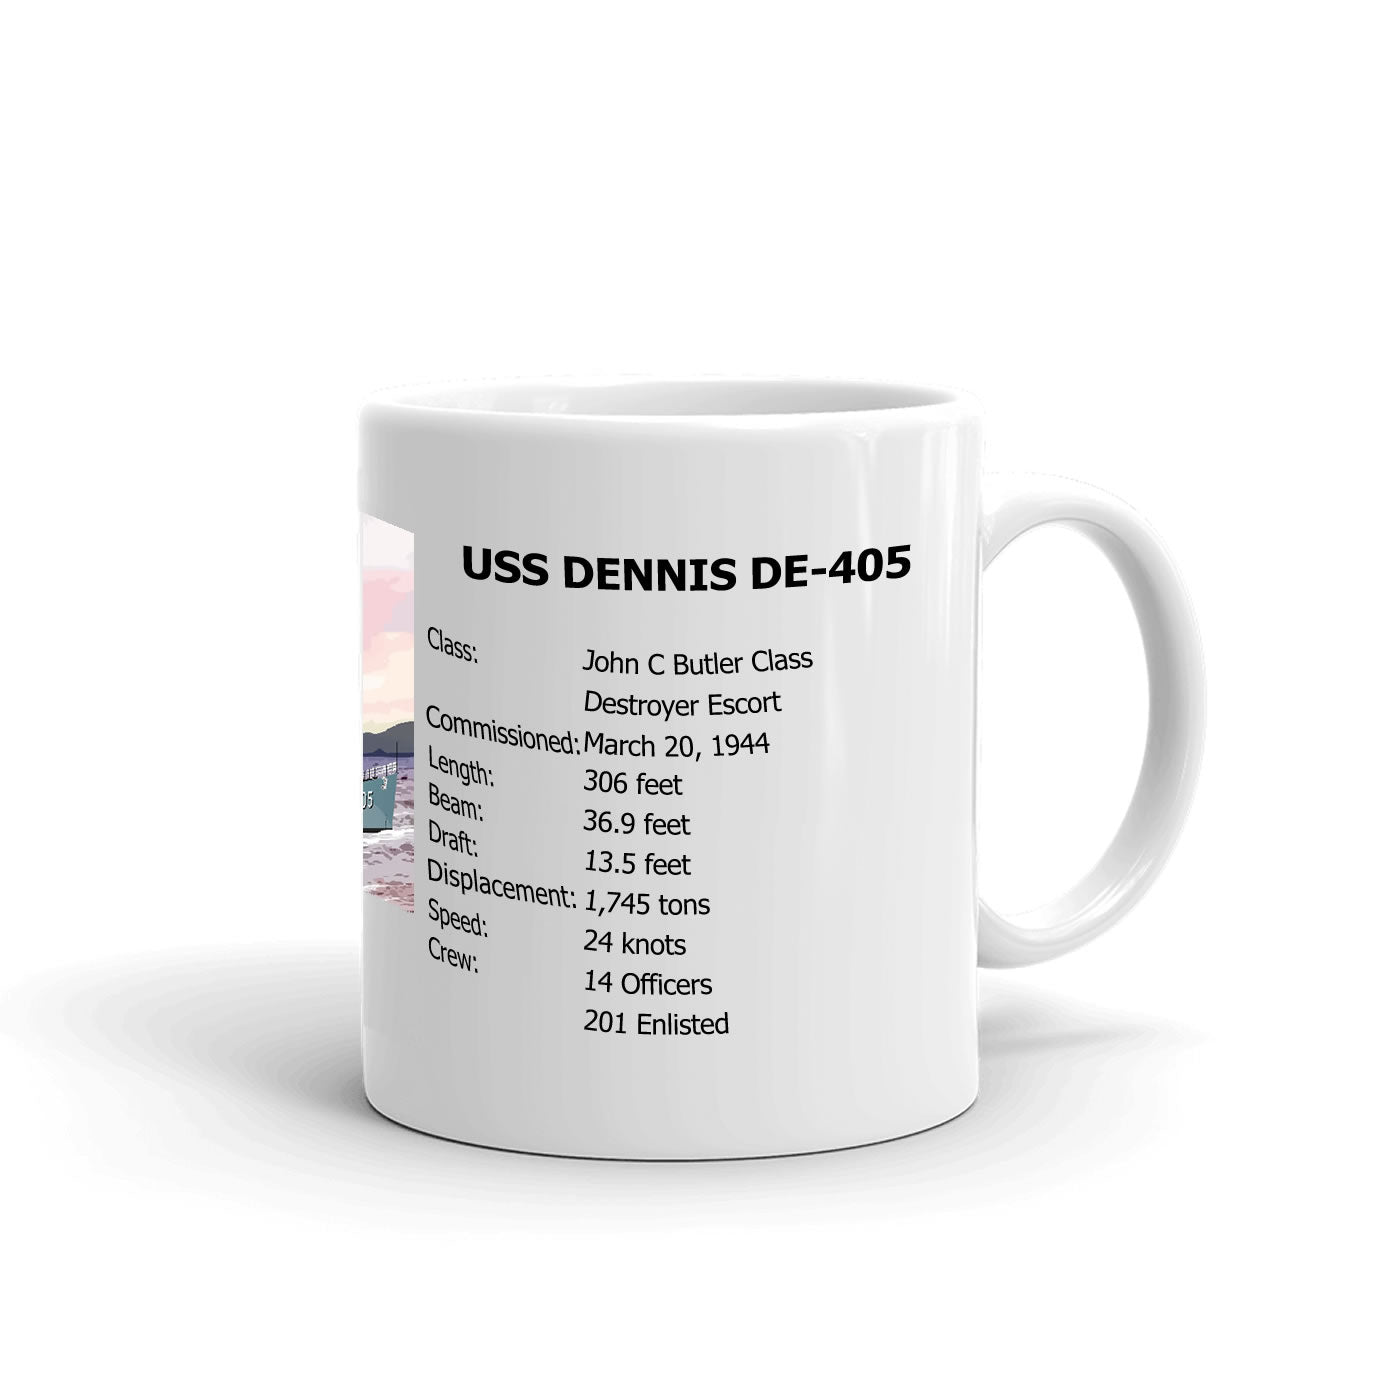 USS Dennis DE-405 Coffee Cup Mug Right Handle